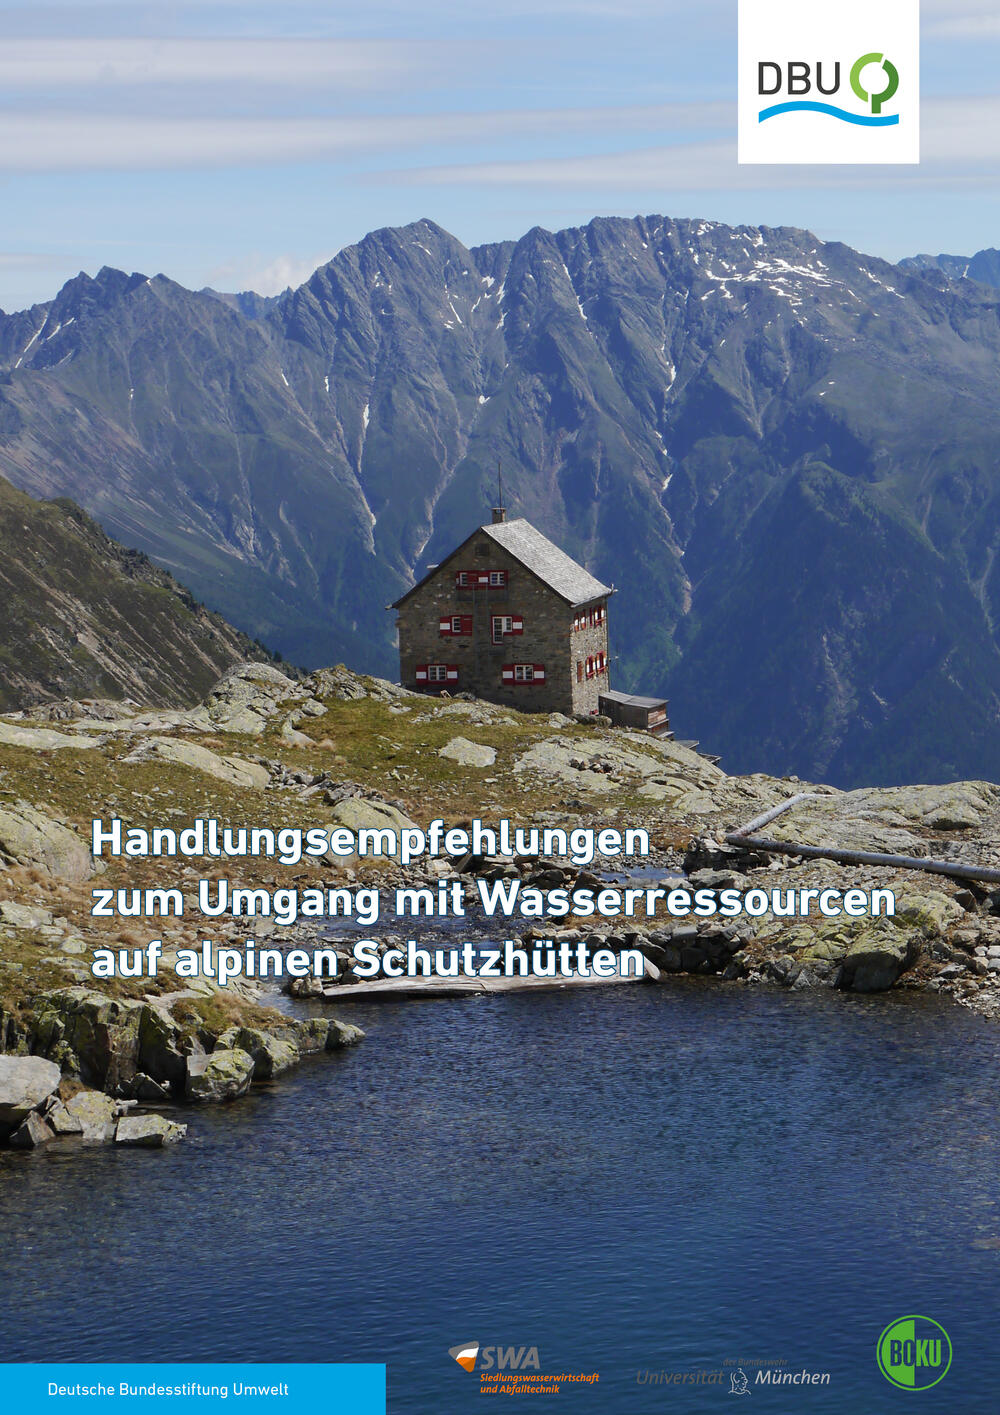 DBU-Publikation „Handlungsempfehlungen zum Umgang mit Wasserressourcen auf alpinen Schutzhütten“  